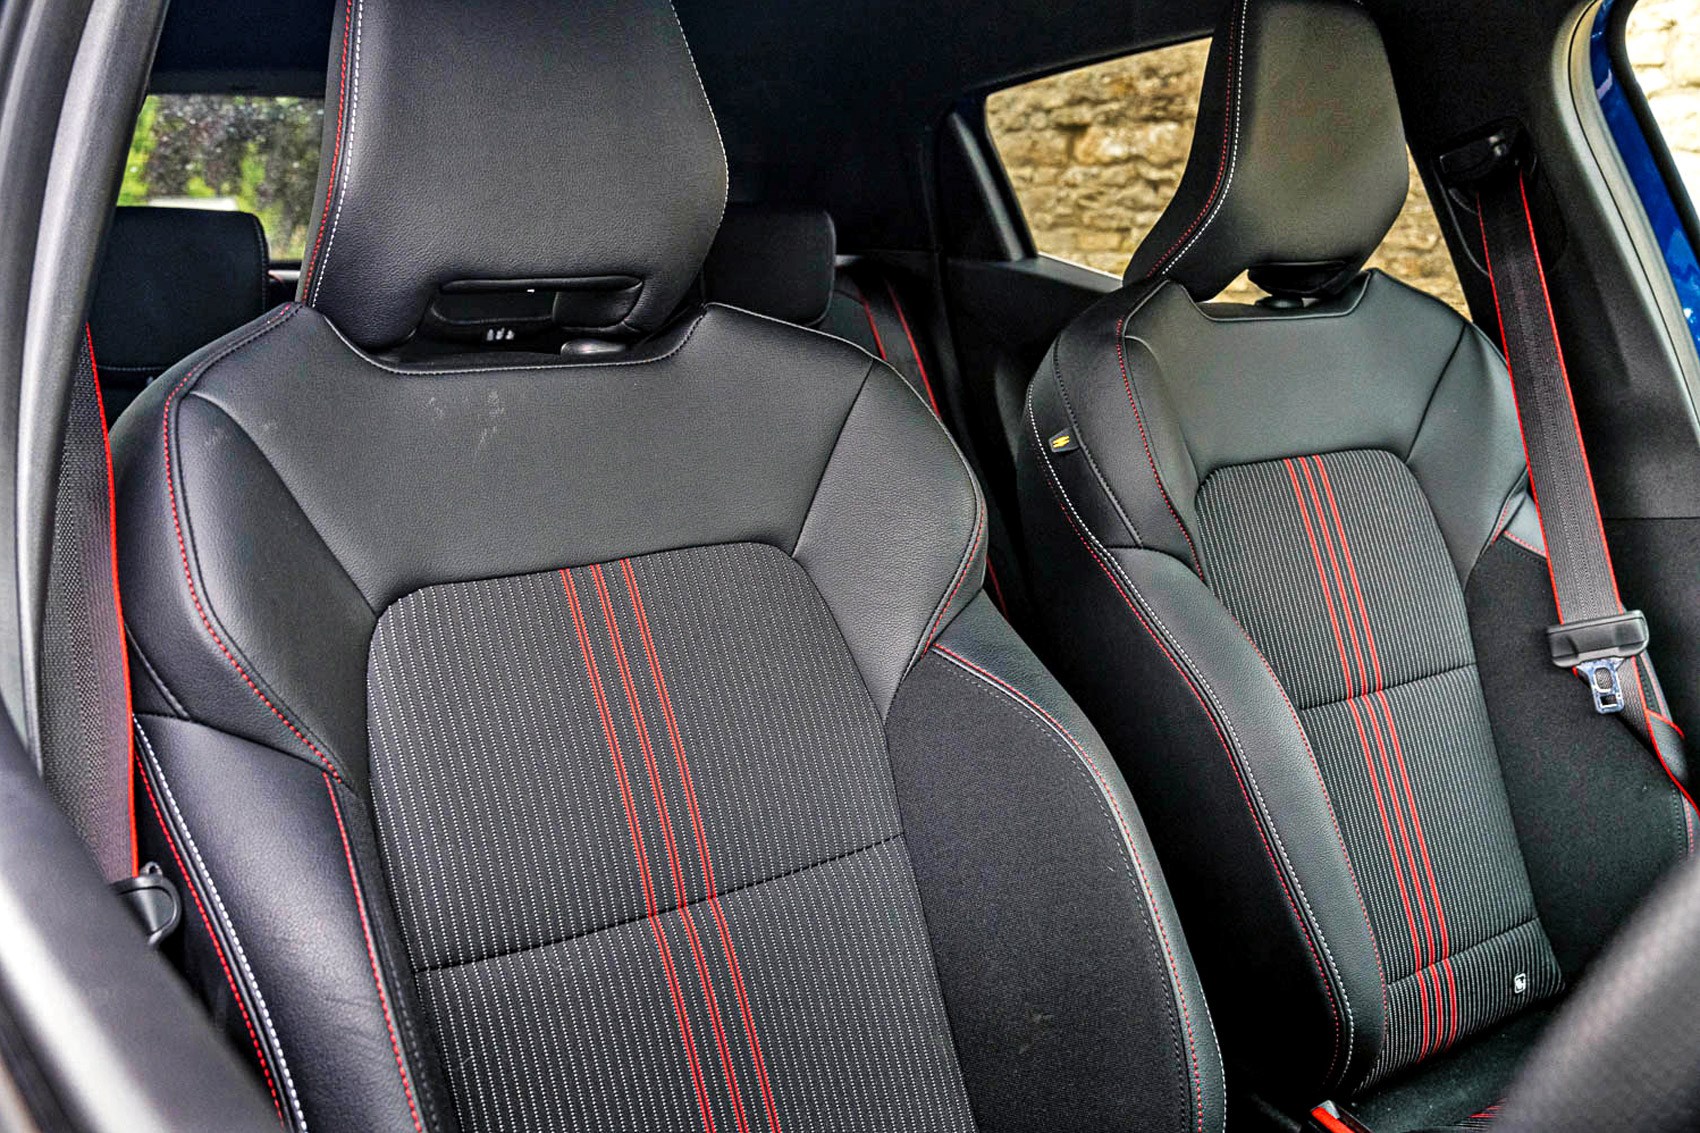 Renault Clio interior - Seats